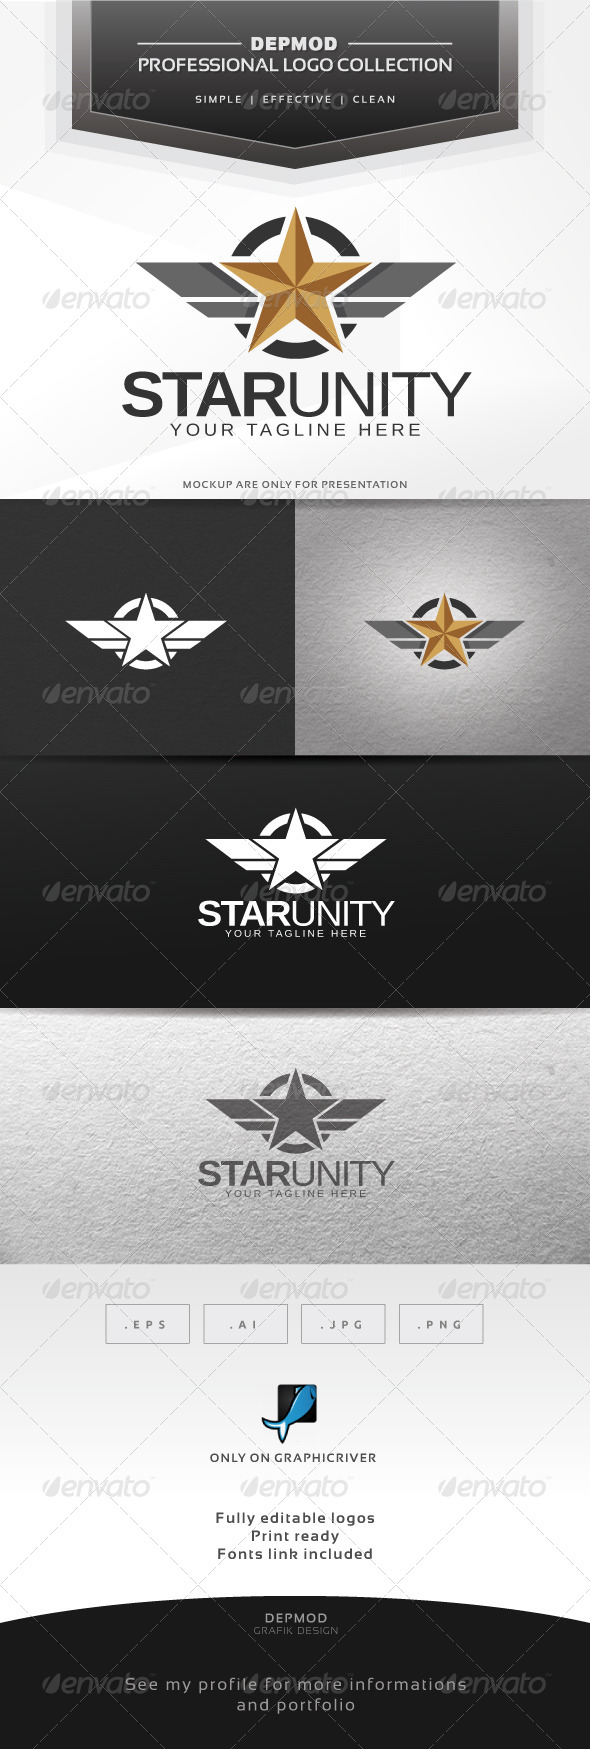 Star Unity Logo